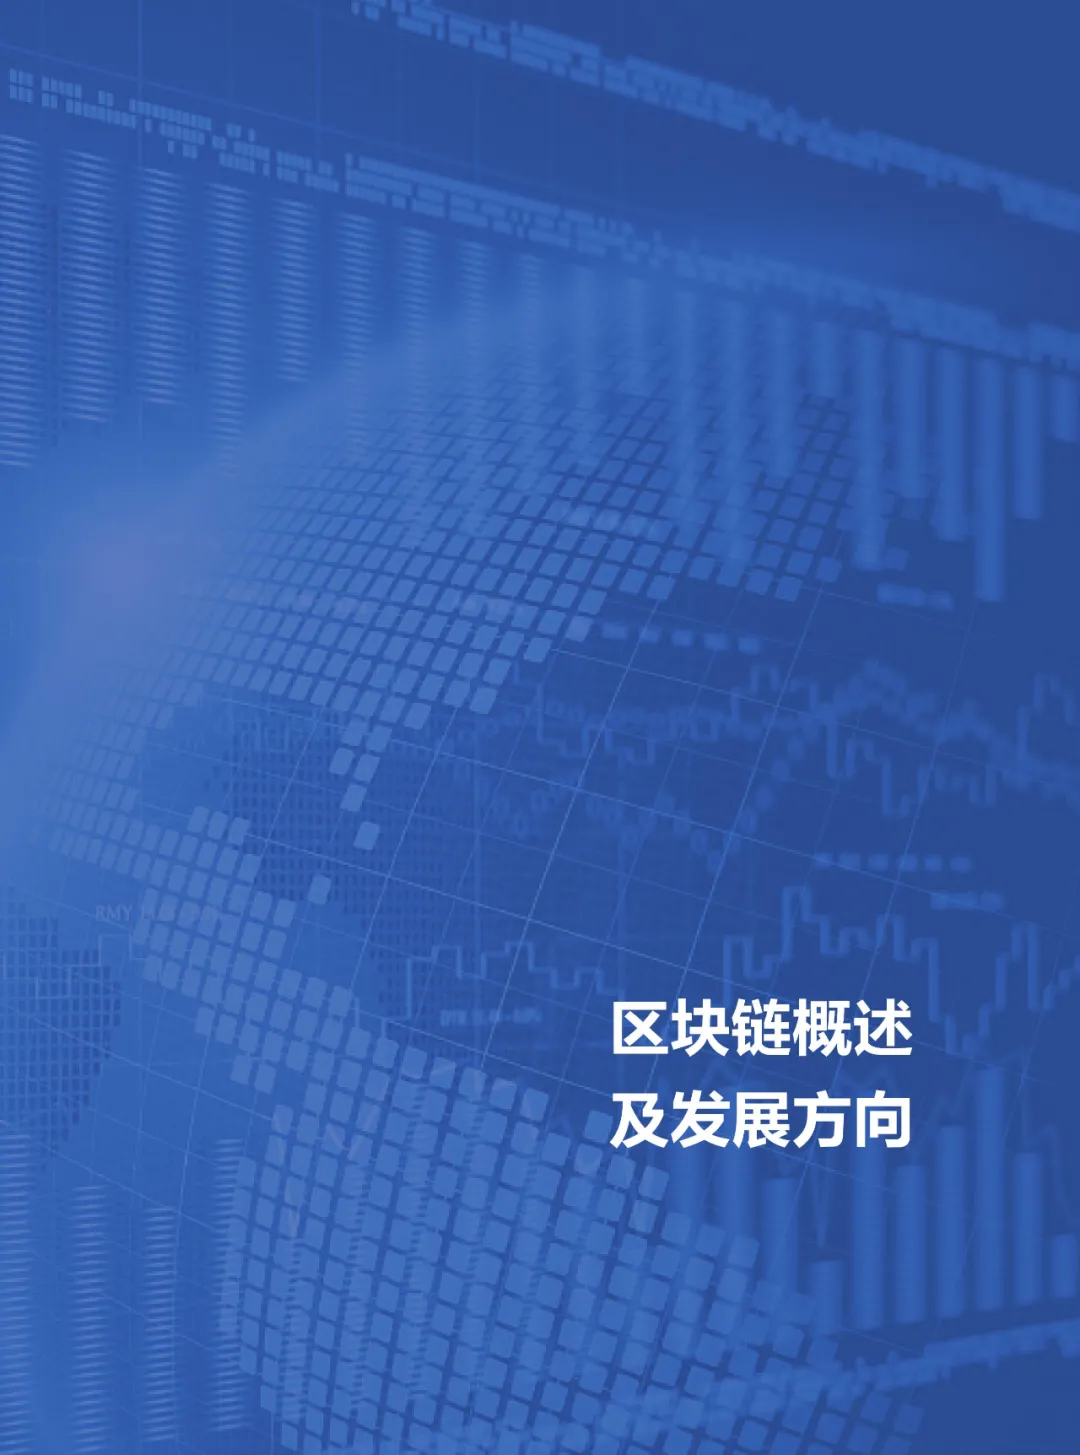 信任经济的崛起——2020中国区块链发展报告_加密算法_09